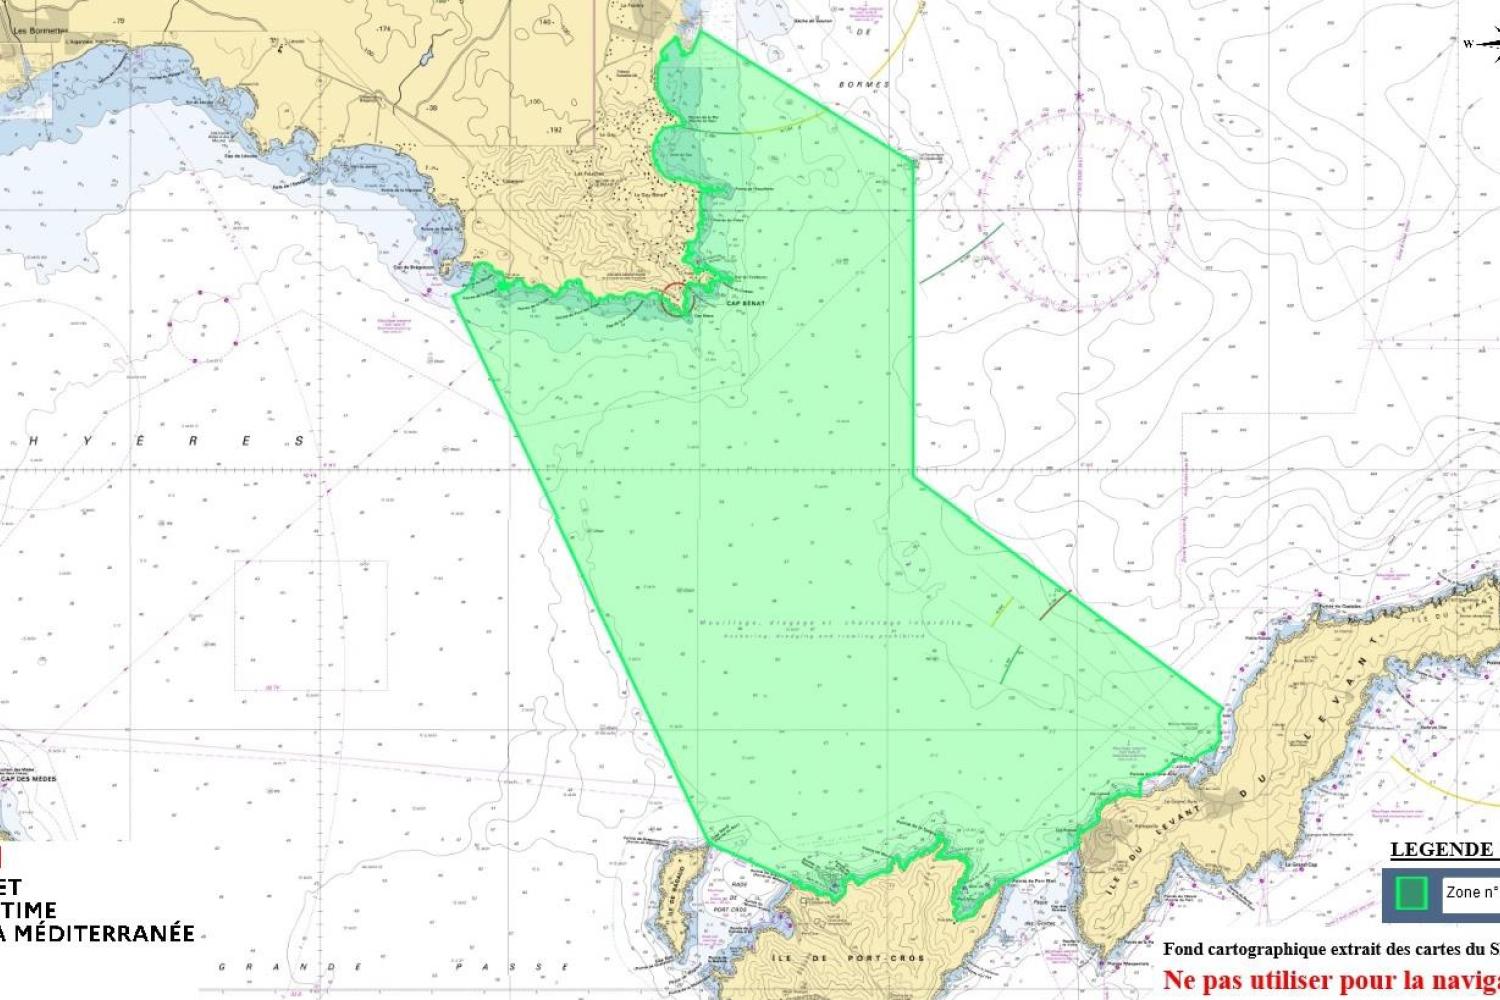 Annex II - Zone n°2, entre le cap Bénat et les îles de Port-Cros et du Levant, délimitée 